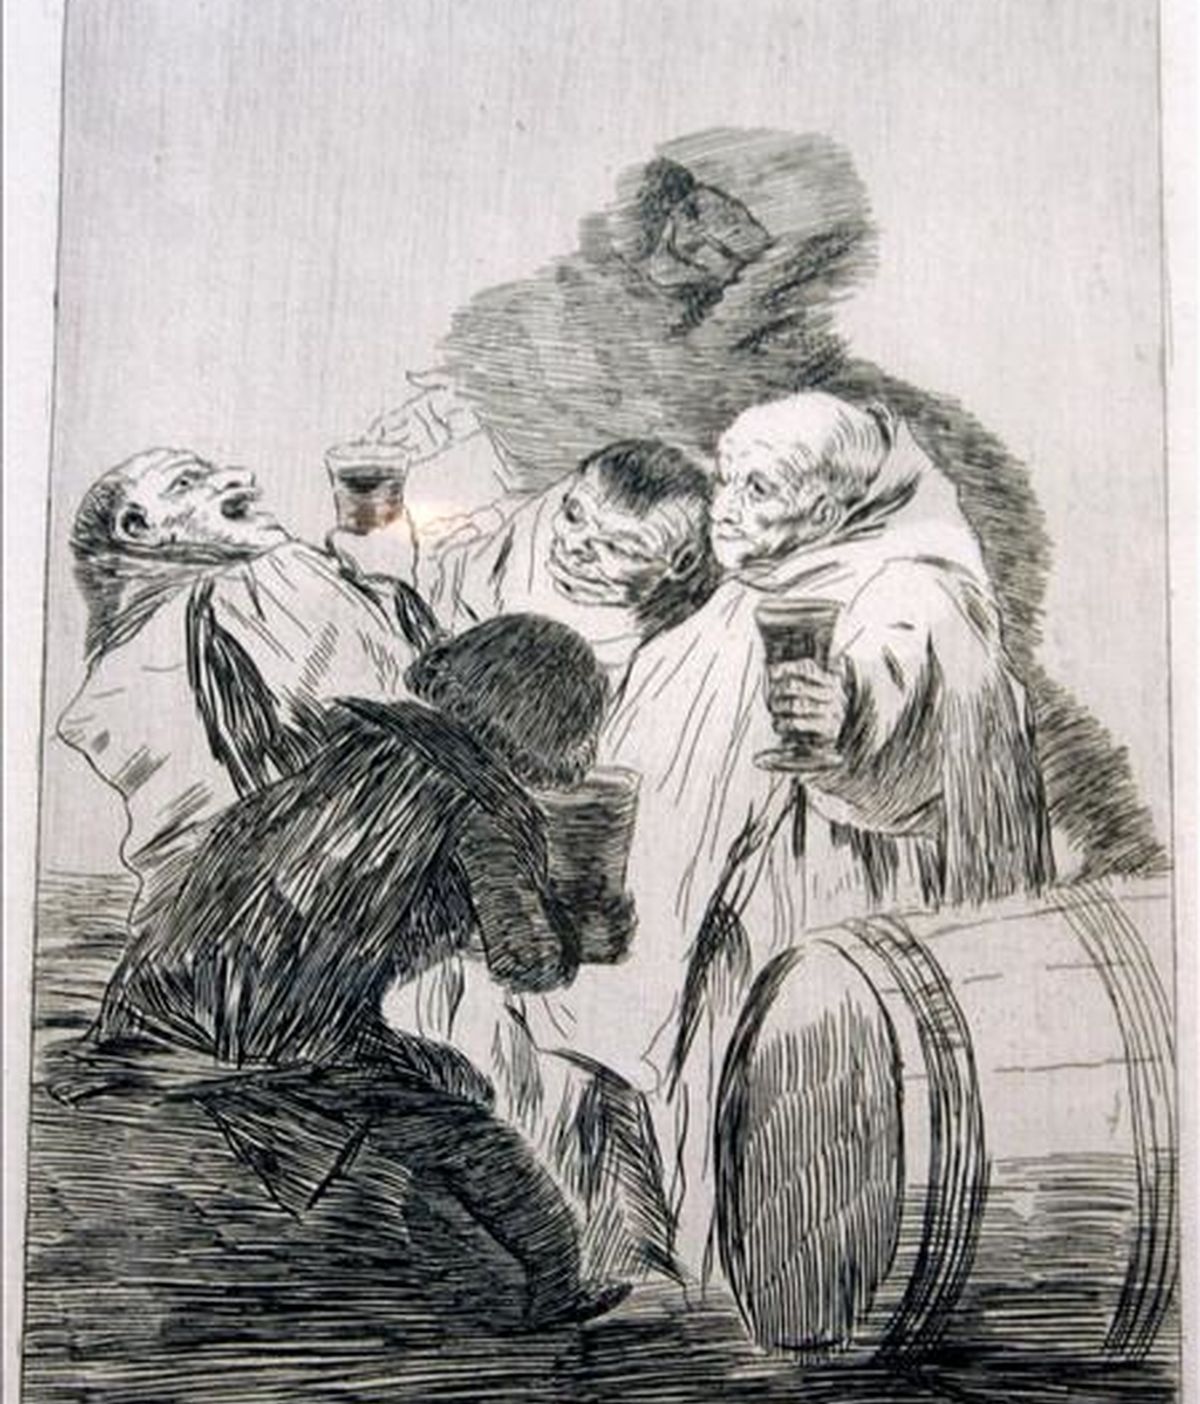 El Museo Reina Sofía ha pedido al Museo del Prado 12 grabados de Goya, de ellos 7 "caprichos", para incorporarlos a su colección en régimen de préstamo. En la imagen, uno de los grabados de la colección "Los Caprichos de Goya". EFE/Archivo